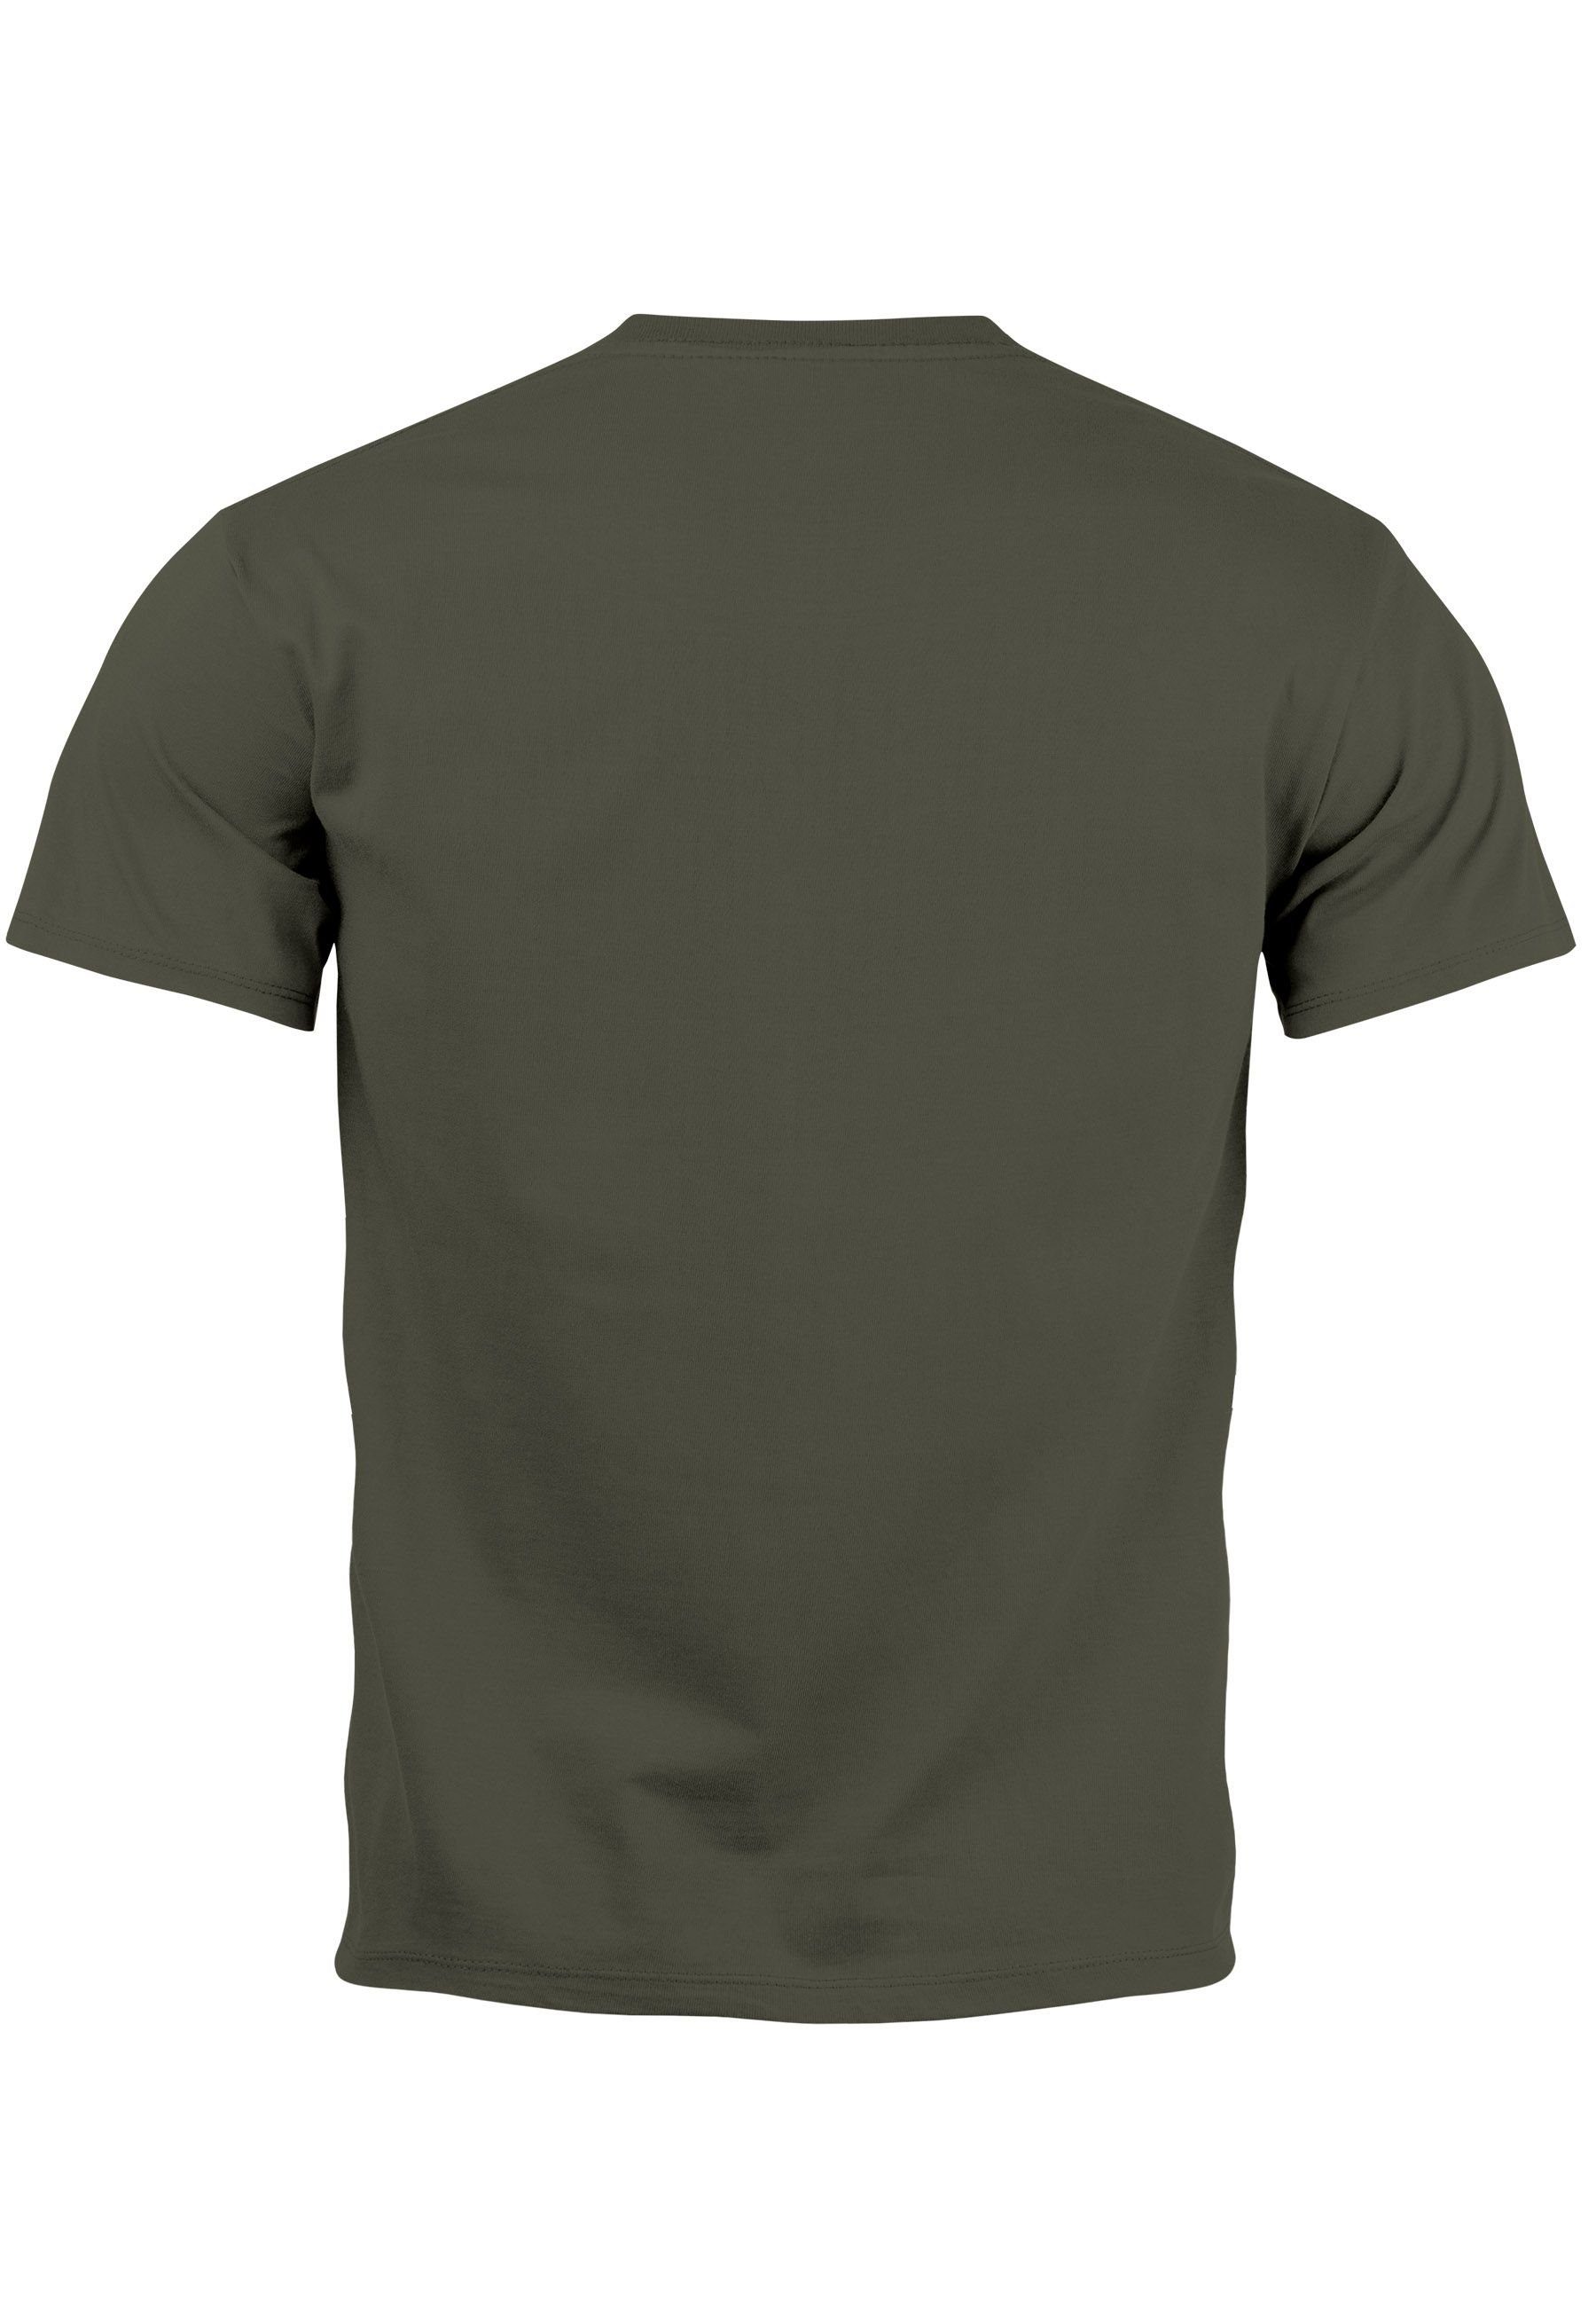 army T-Shirt Good Aufdruck mit Smiling Face Neverless Teachwe Bedruckt Print Print Print-Shirt Herren Vibes